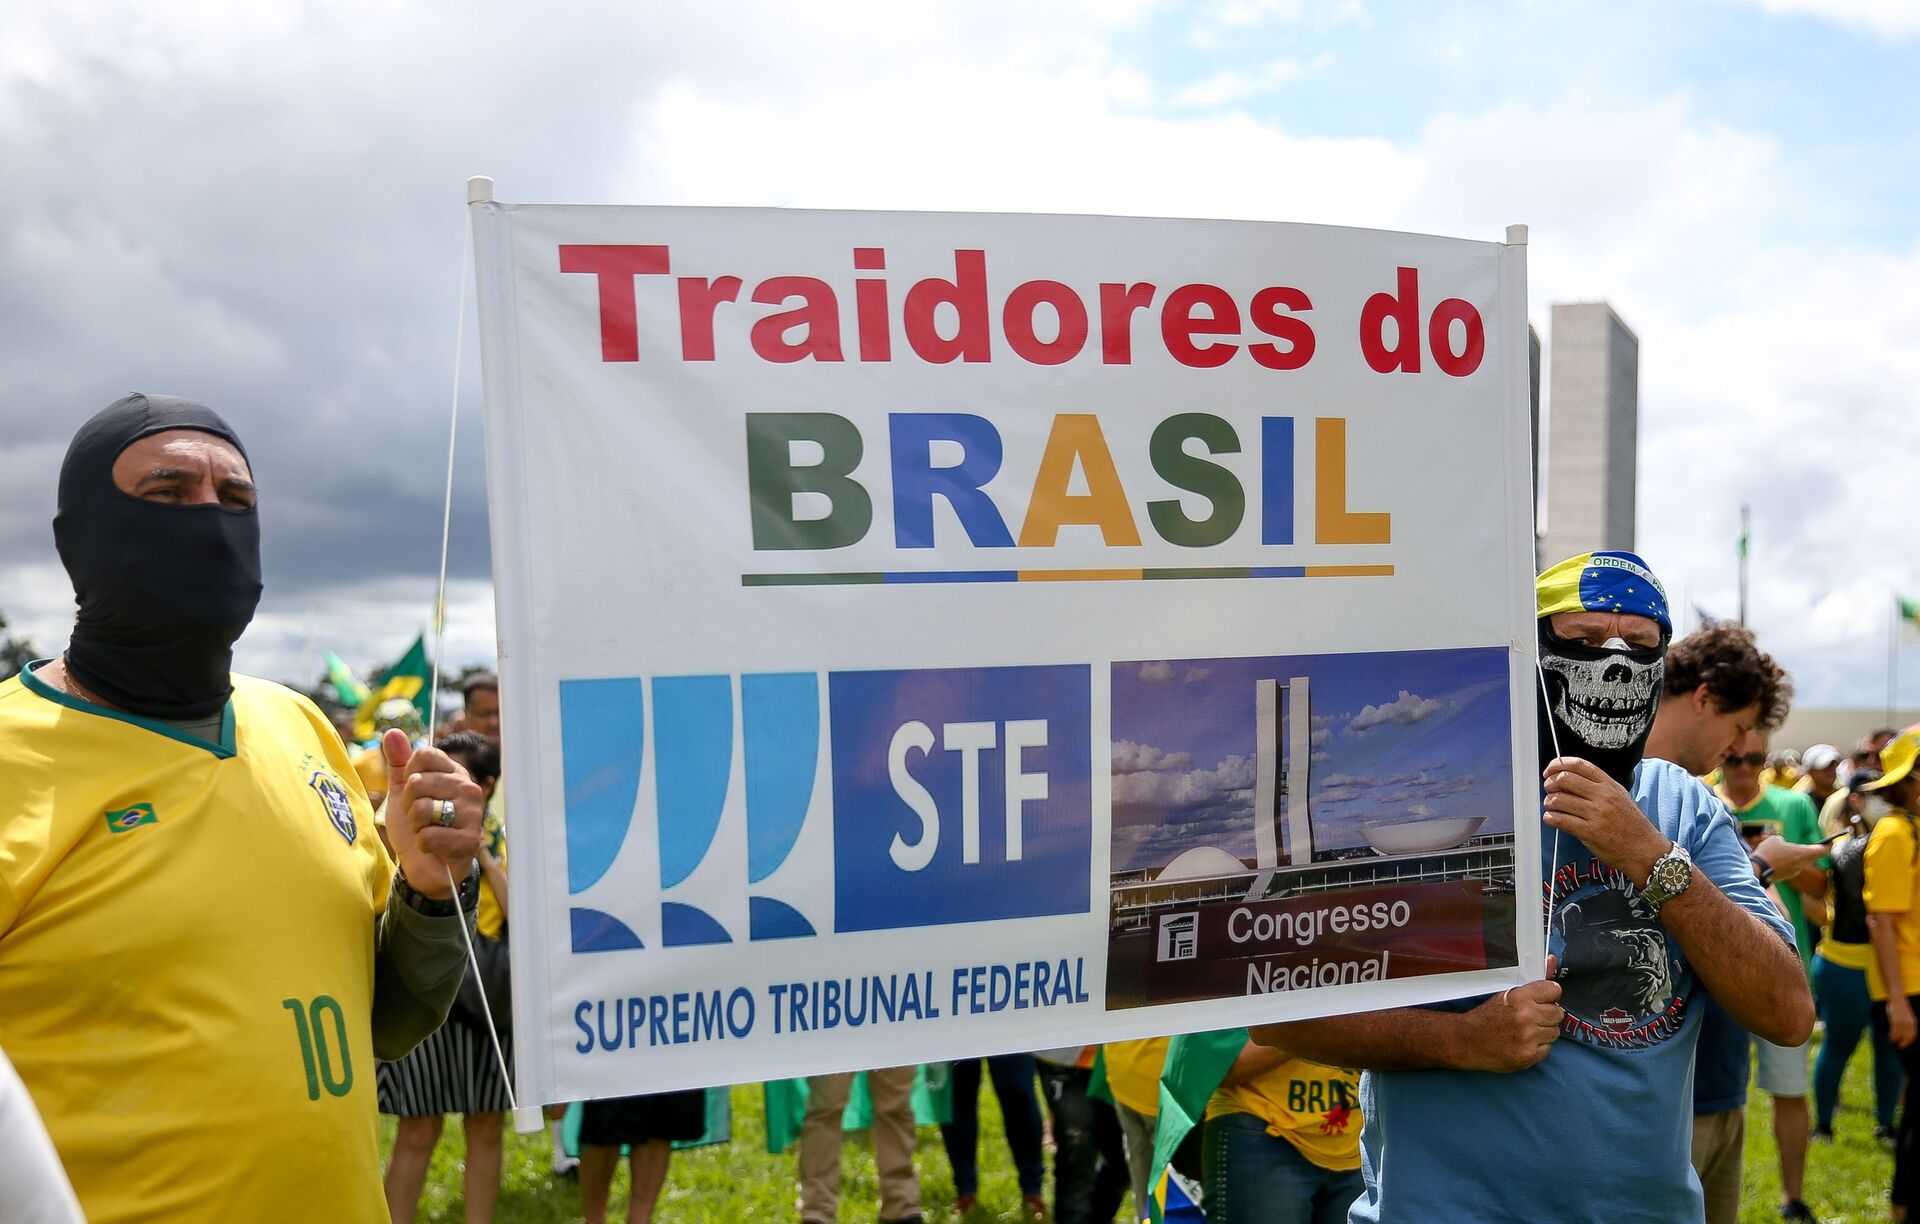 Brasil: Clube Militar fala em ponto de ruptura e prega intervenção no STF - Sputnik Brasil, 1920, 10.03.2021